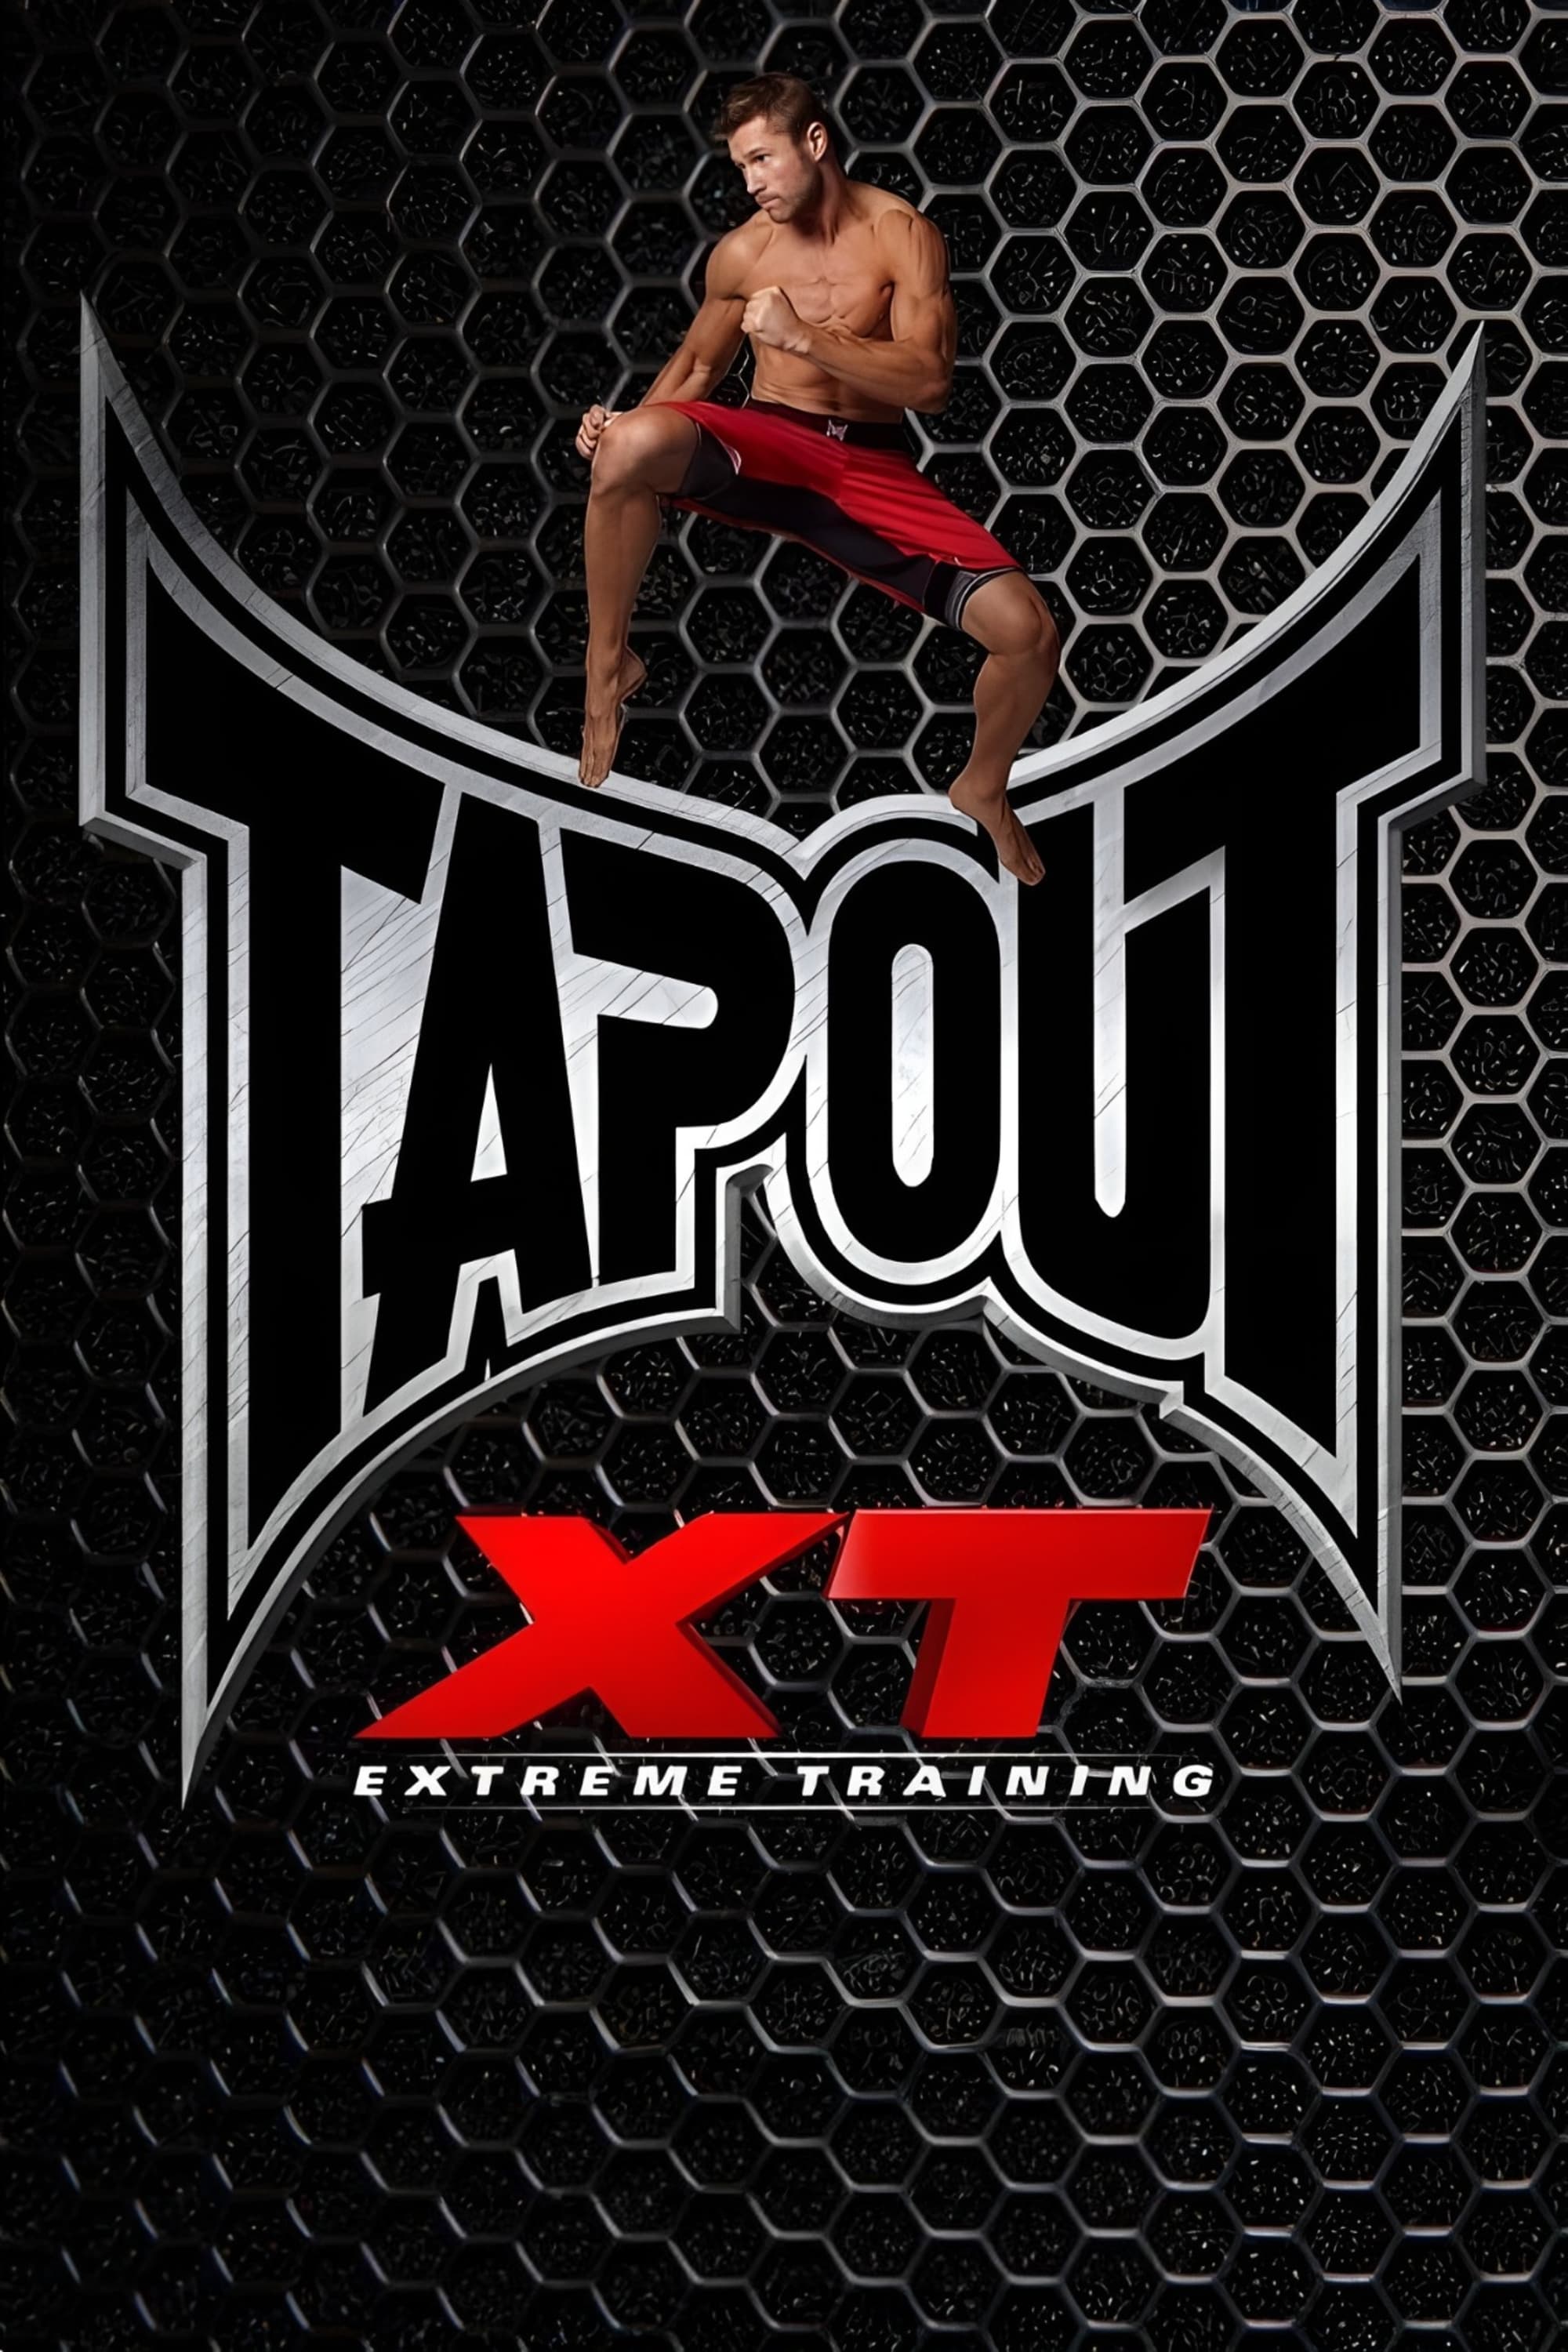 Tapout XT - Round 5 XT